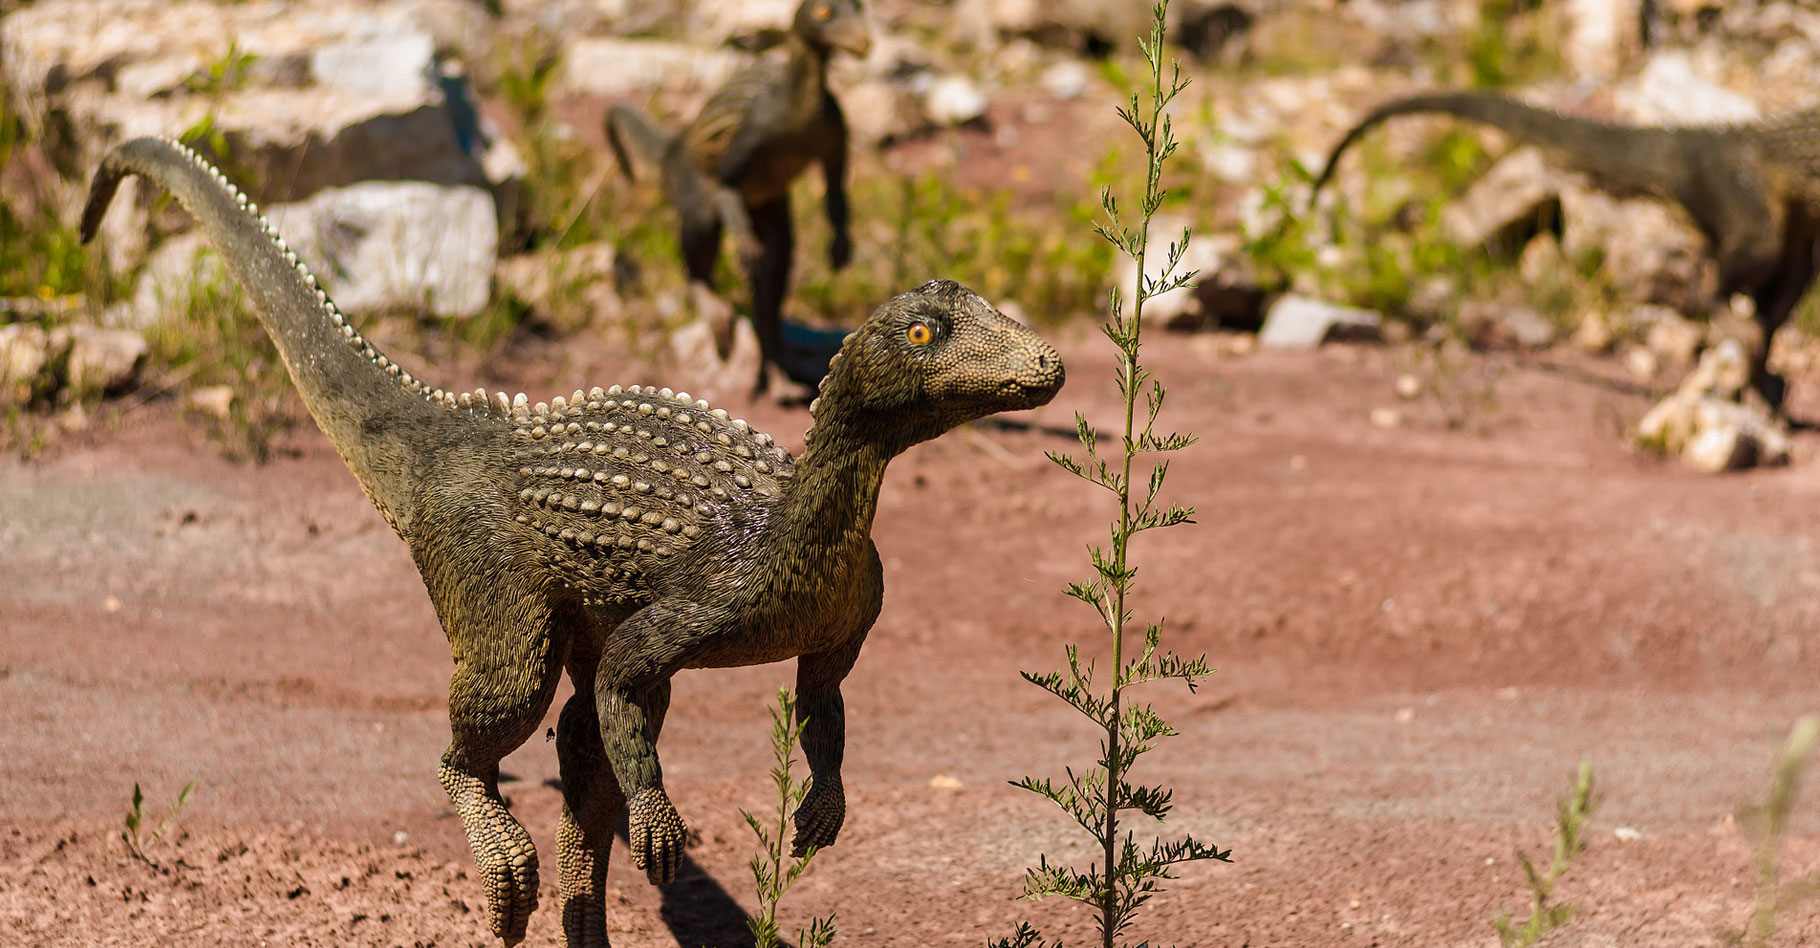 Archéologie : Des empreintes de dinosaures découvertes près d'Imilchil datant de la période jurassique